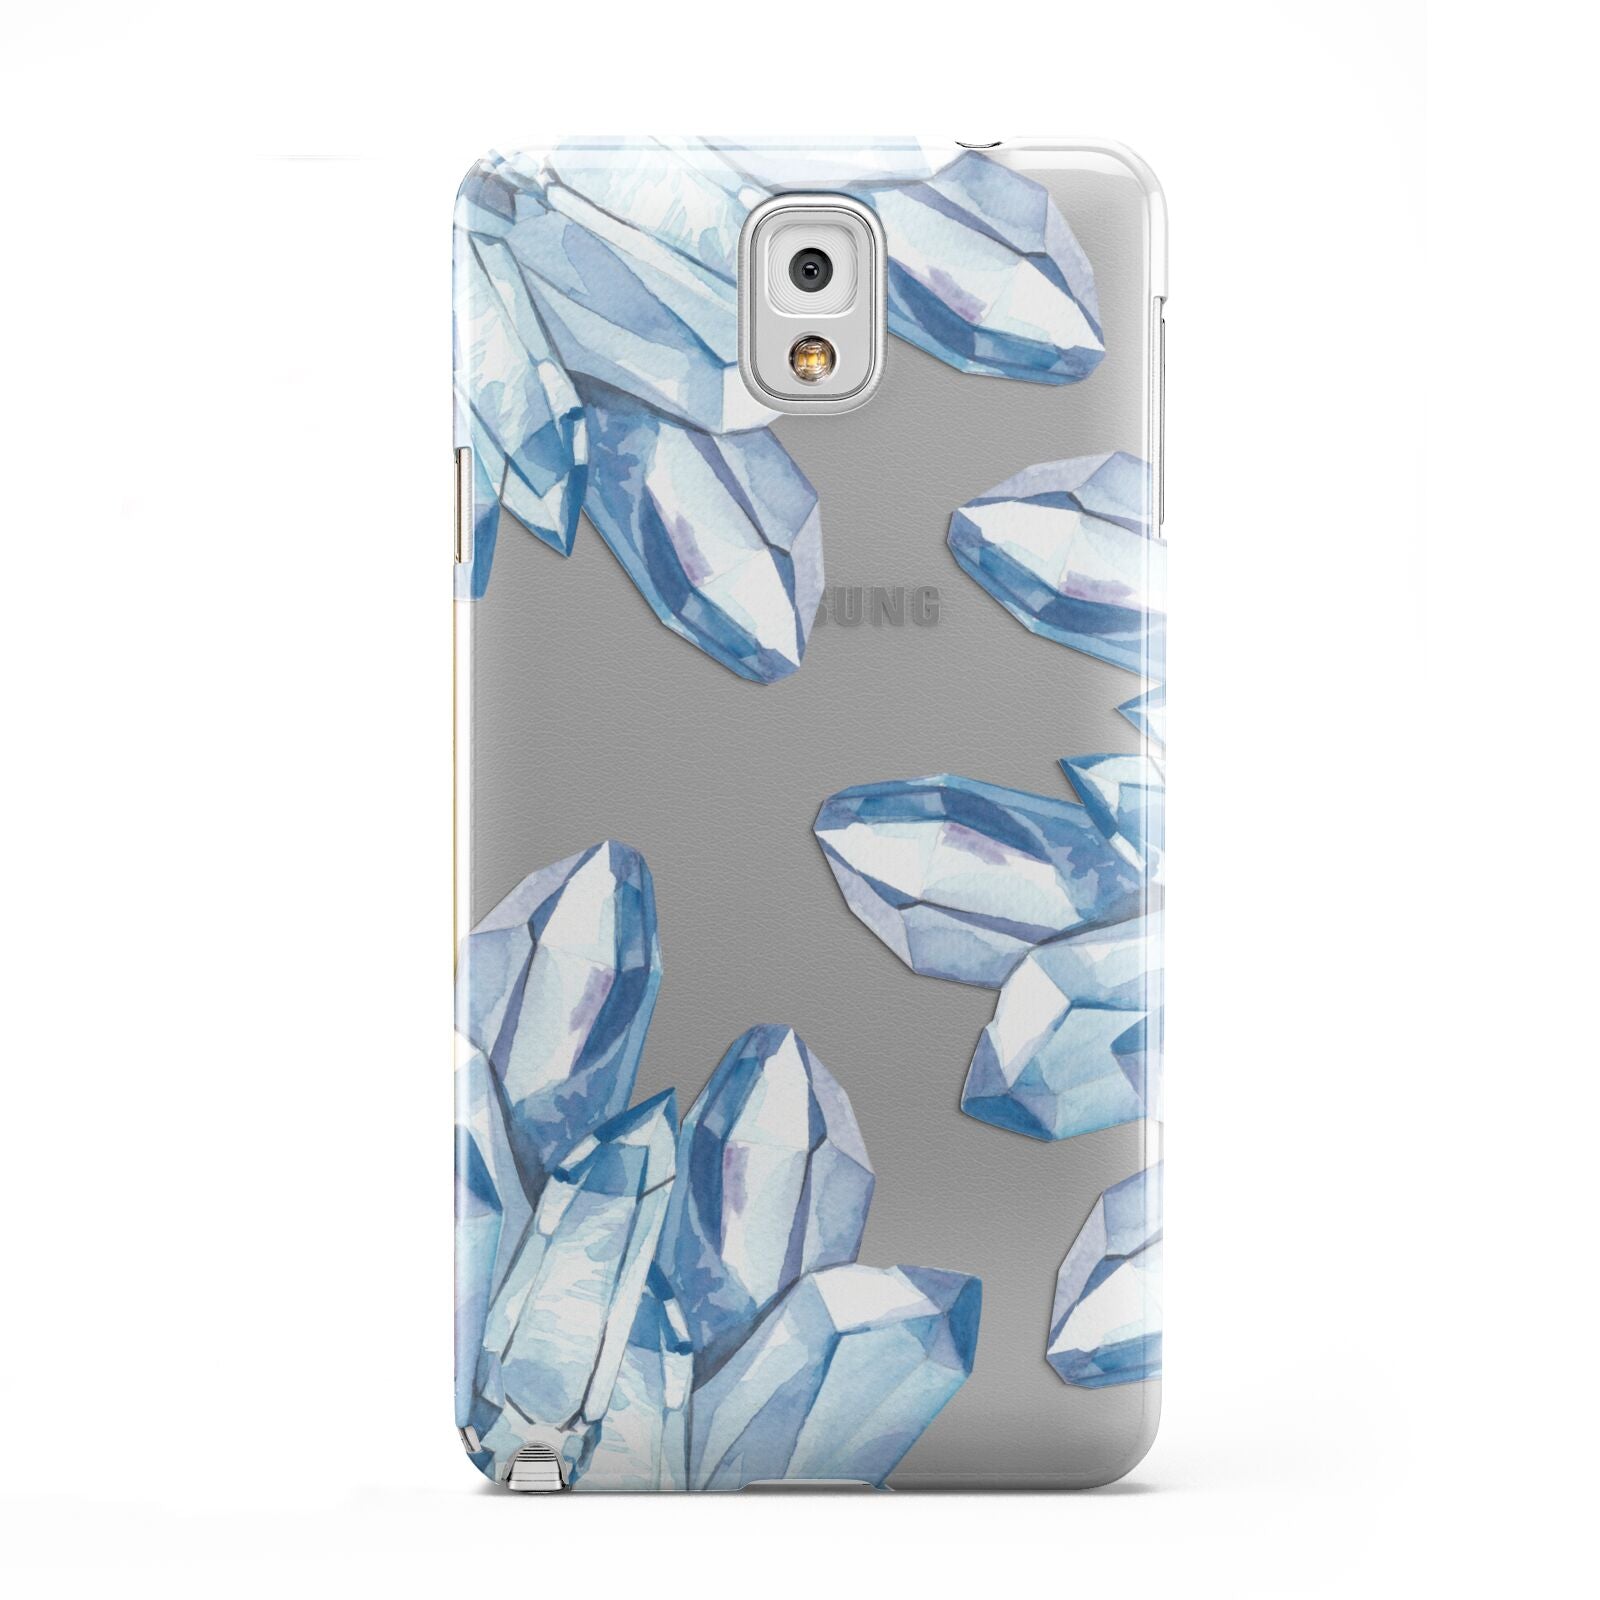 Blue Crystals Samsung Galaxy Note 3 Case